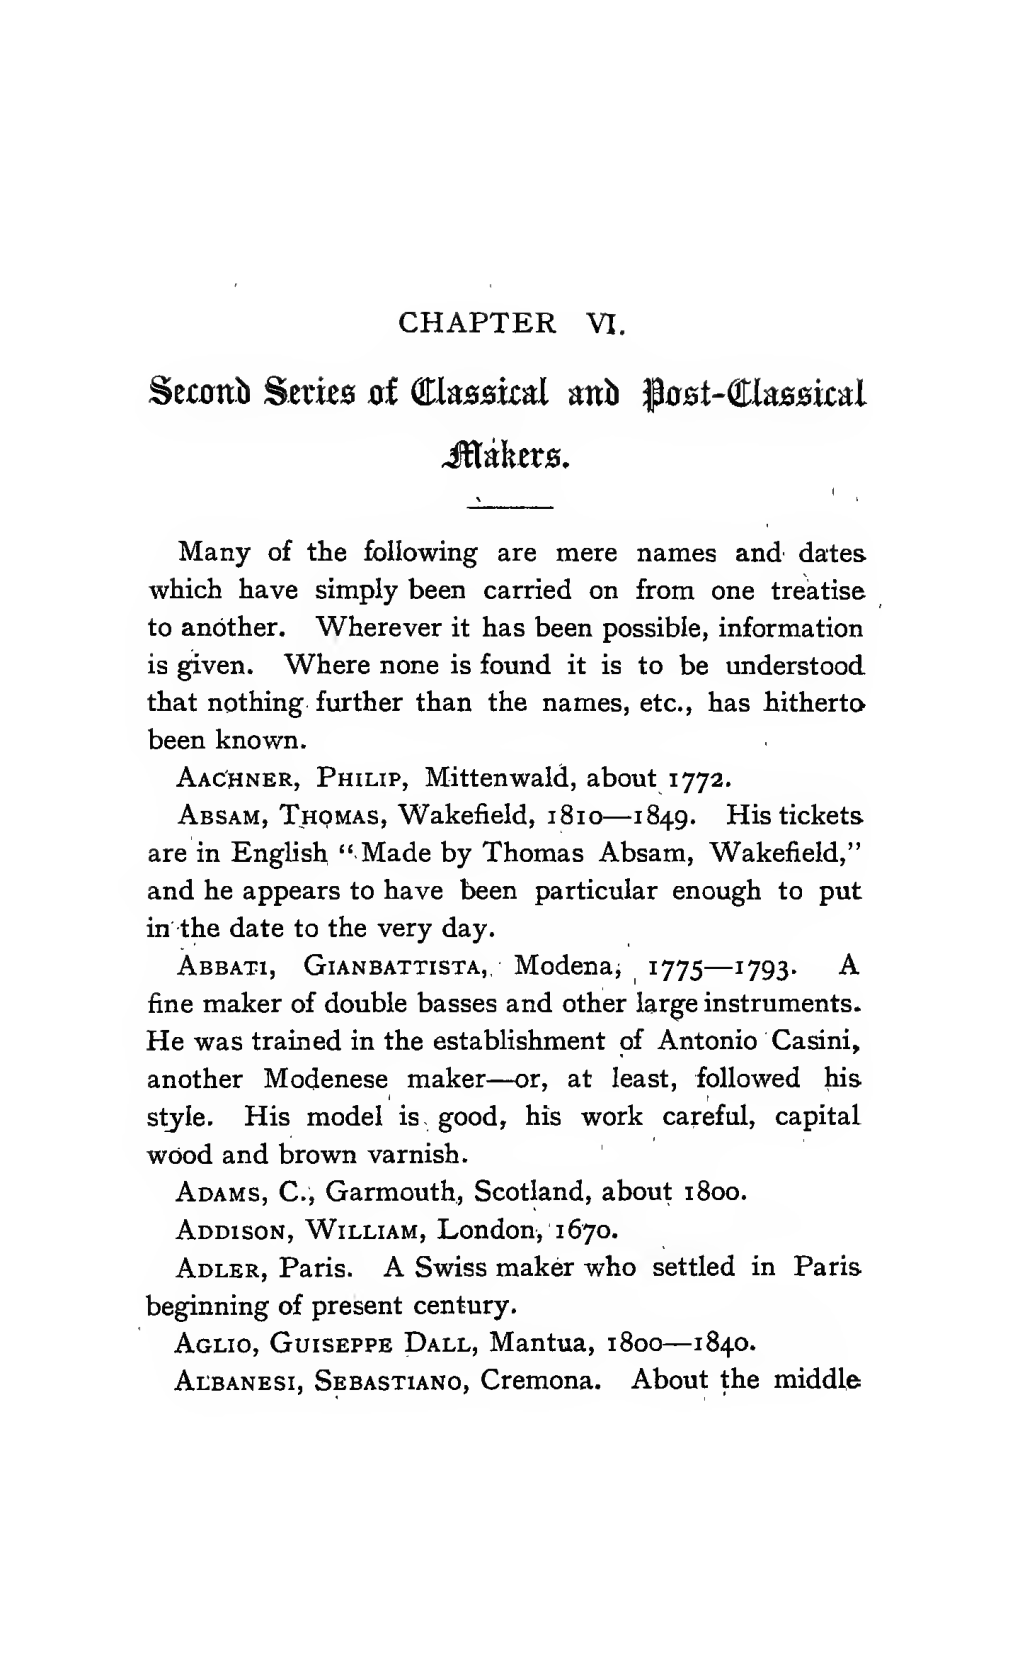 The Fiddle Fancier's Guide; a Manual of Information Regarding Violins, Violas